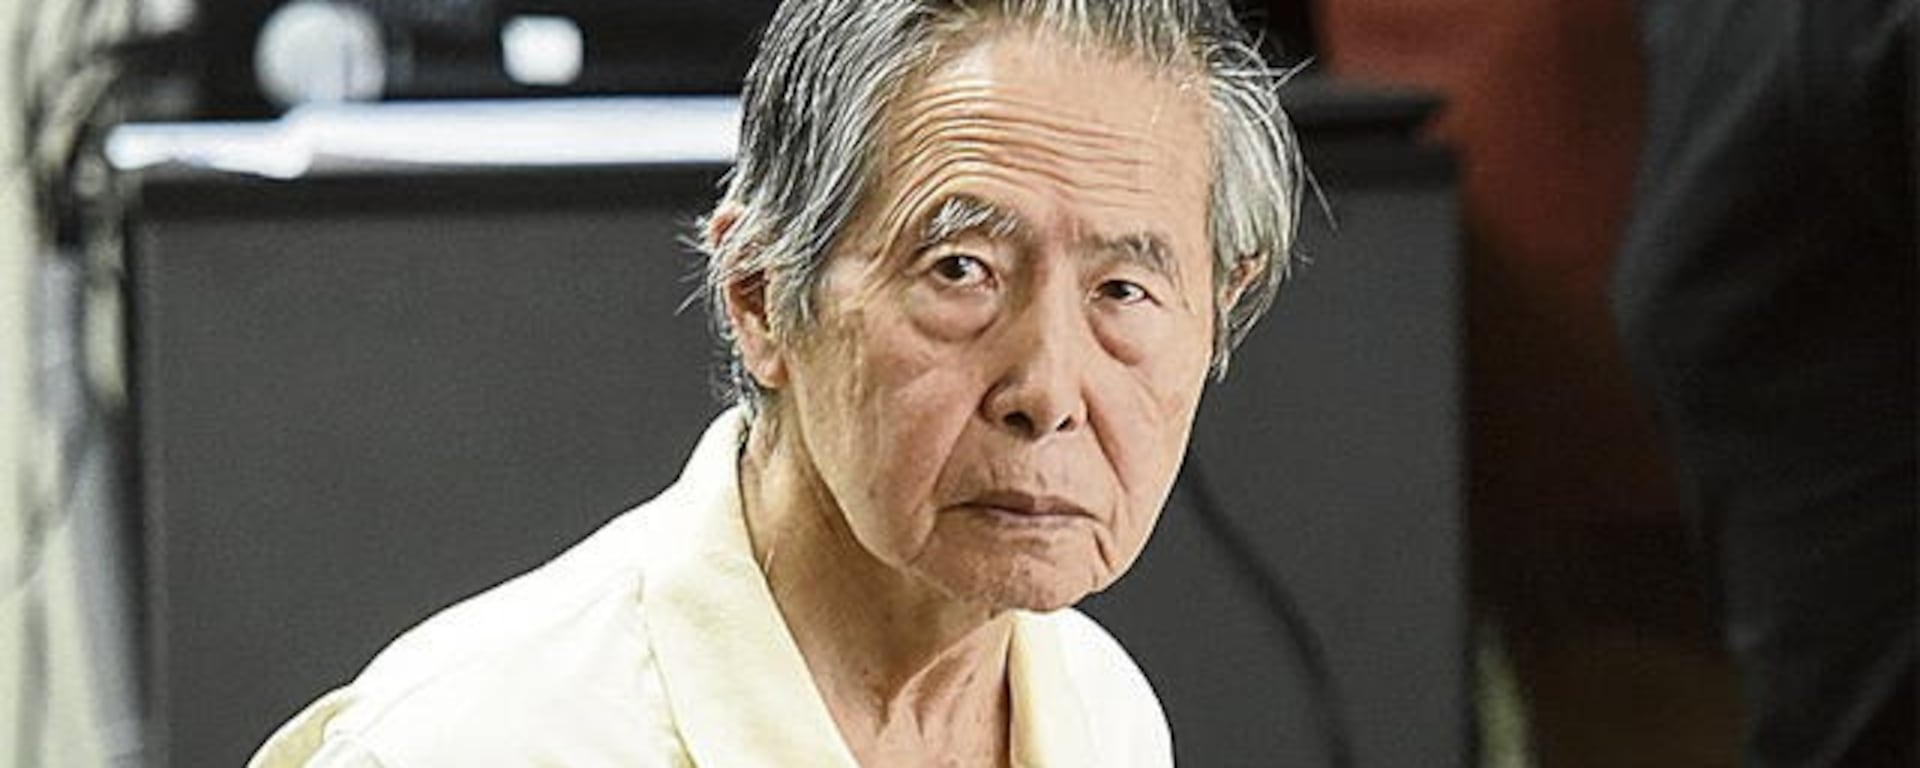 Keiko Fujimori confirma la postulación presidencial de Alberto Fujimori: ¿Qué camino recorrerá la candidatura?